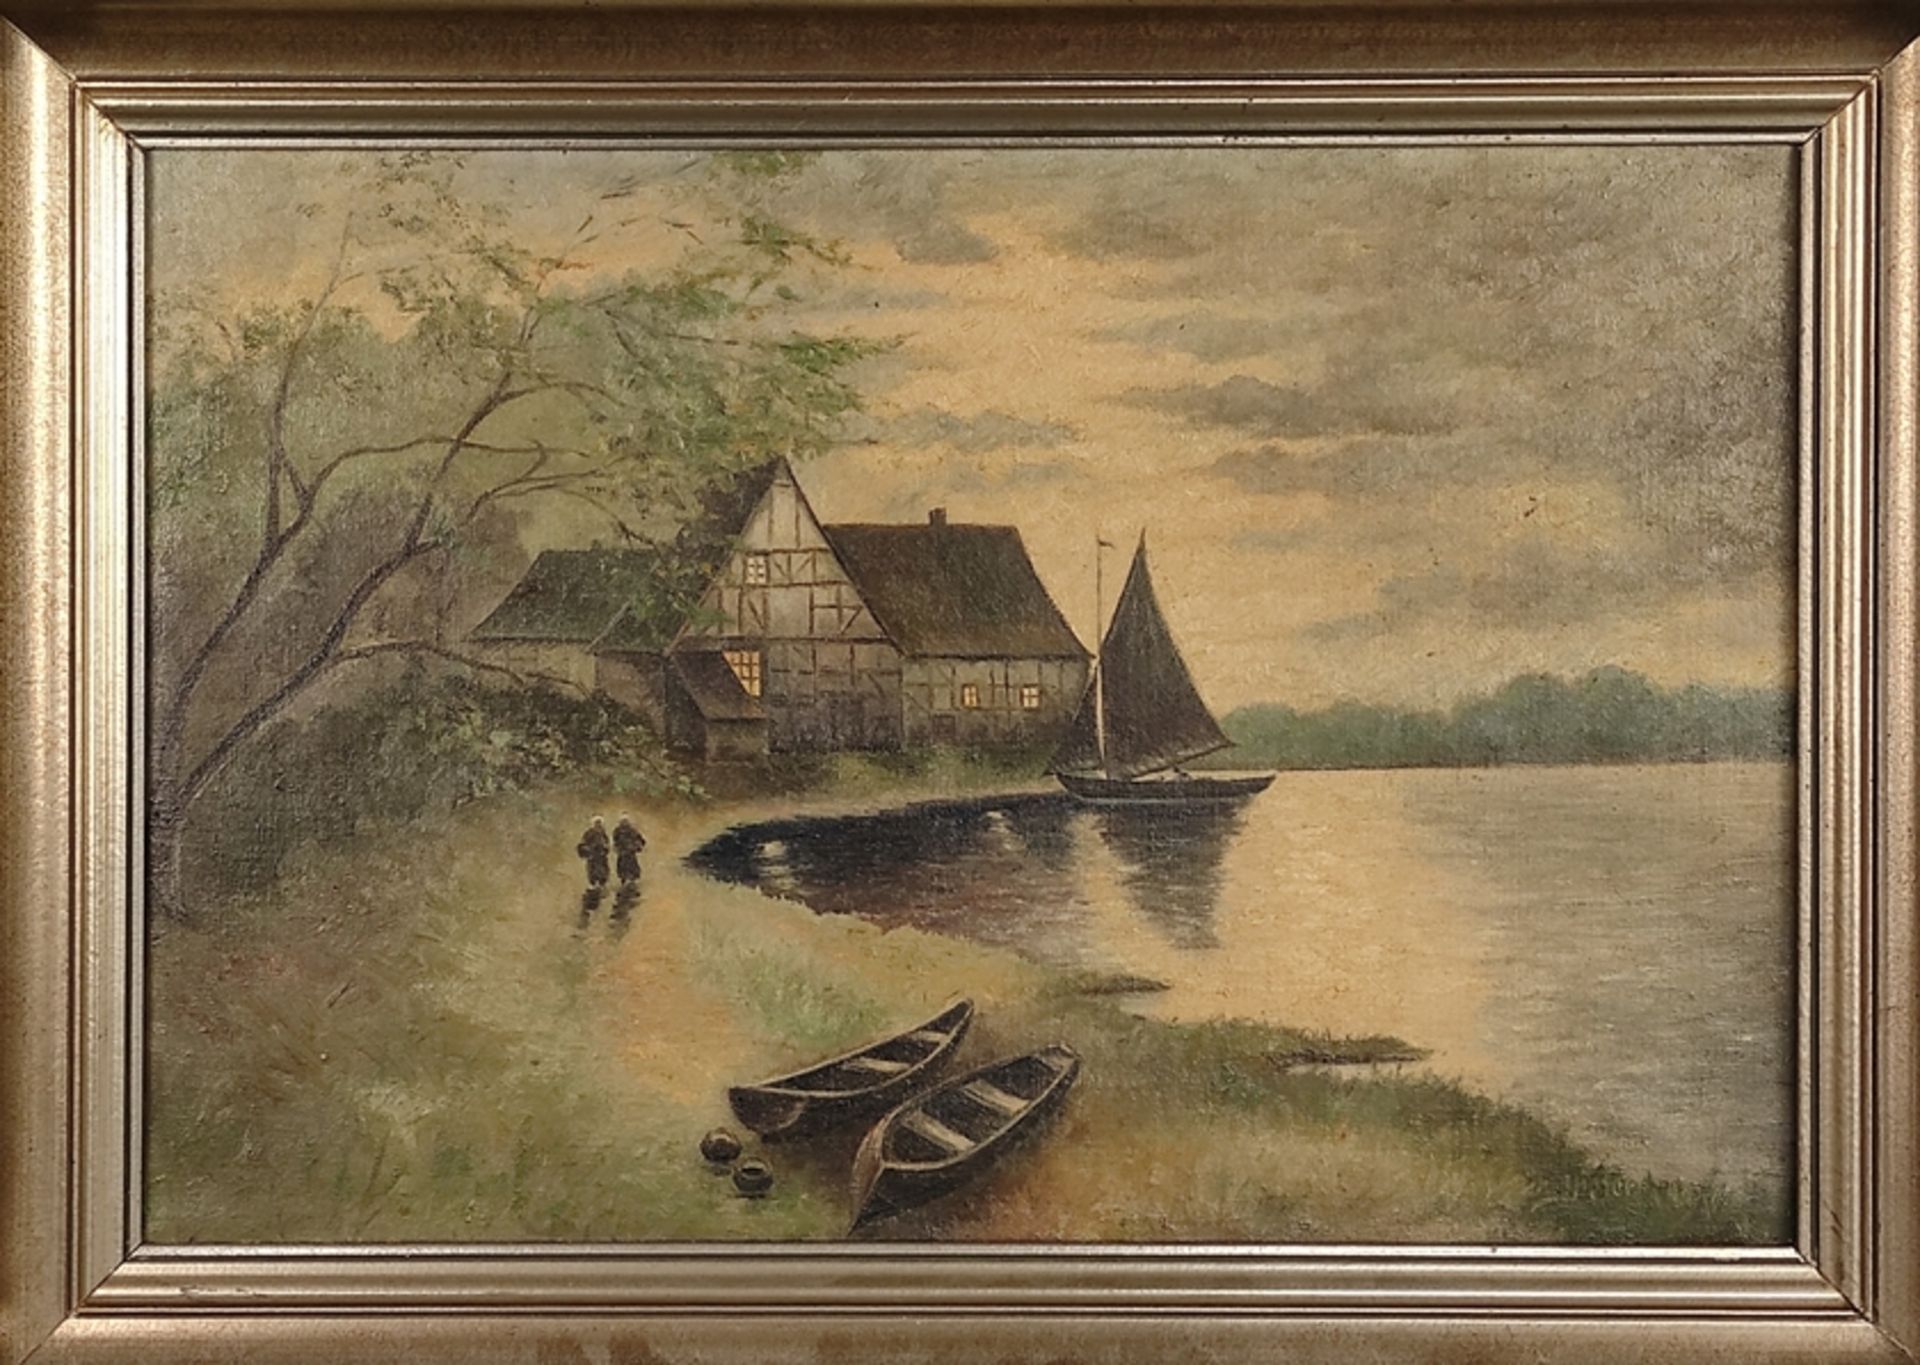 Dieter, H. (20. Jahrhundert) "Bauernhaus am See", mit zwei Ruderbooten, Öl auf Leinwand, rechts unt - Bild 2 aus 4